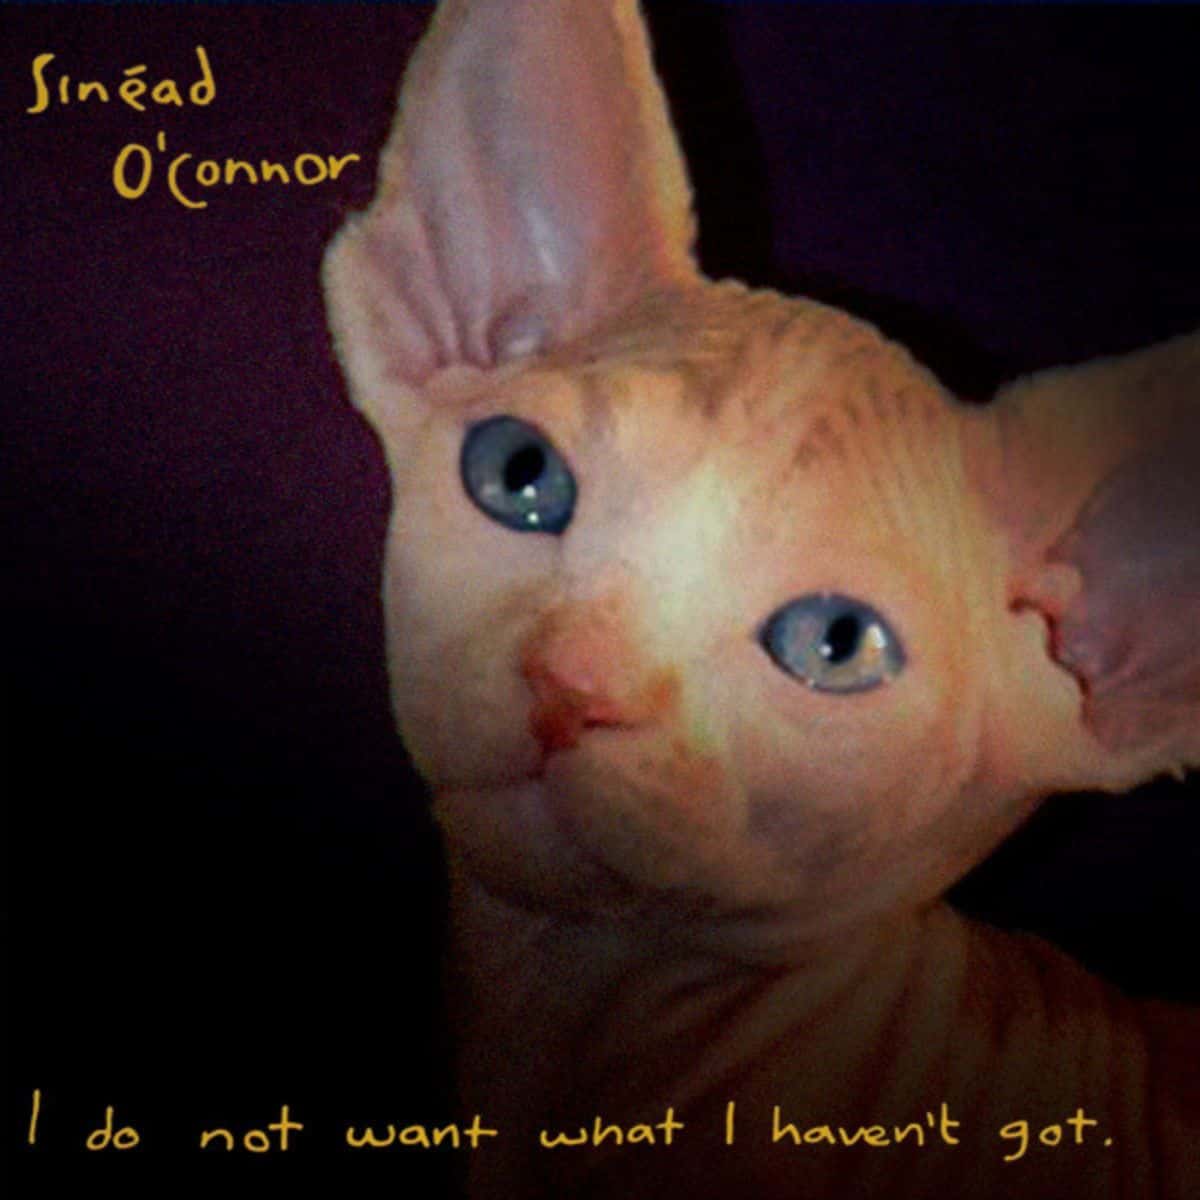 cat version of sinead o'connor's album cover